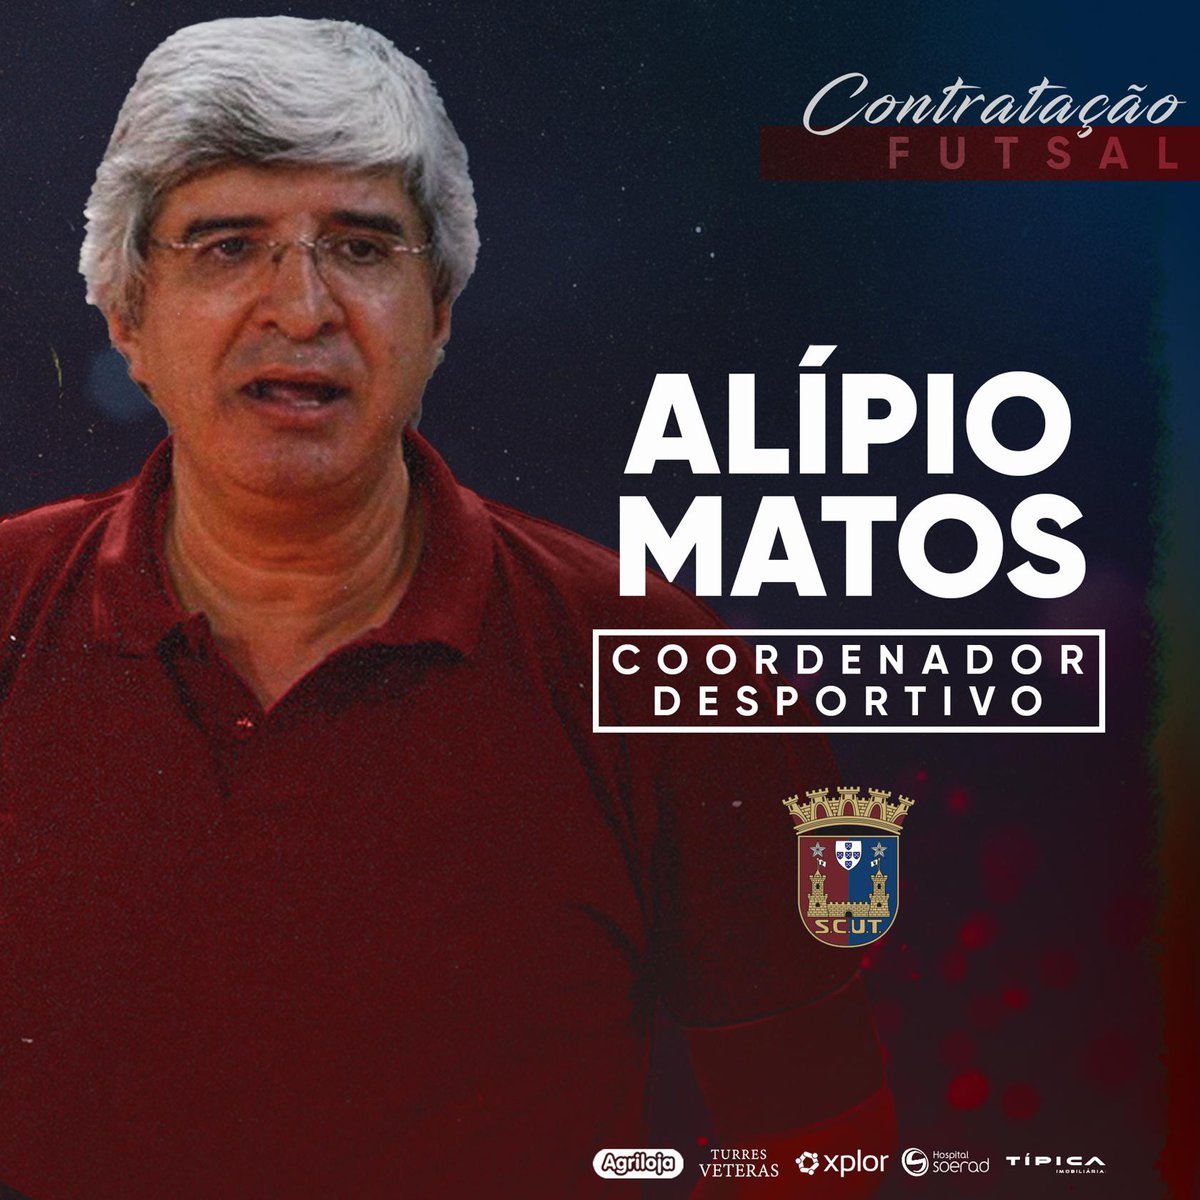 Alípio Matos é o novo Coordenador Desportivo para o Futsal